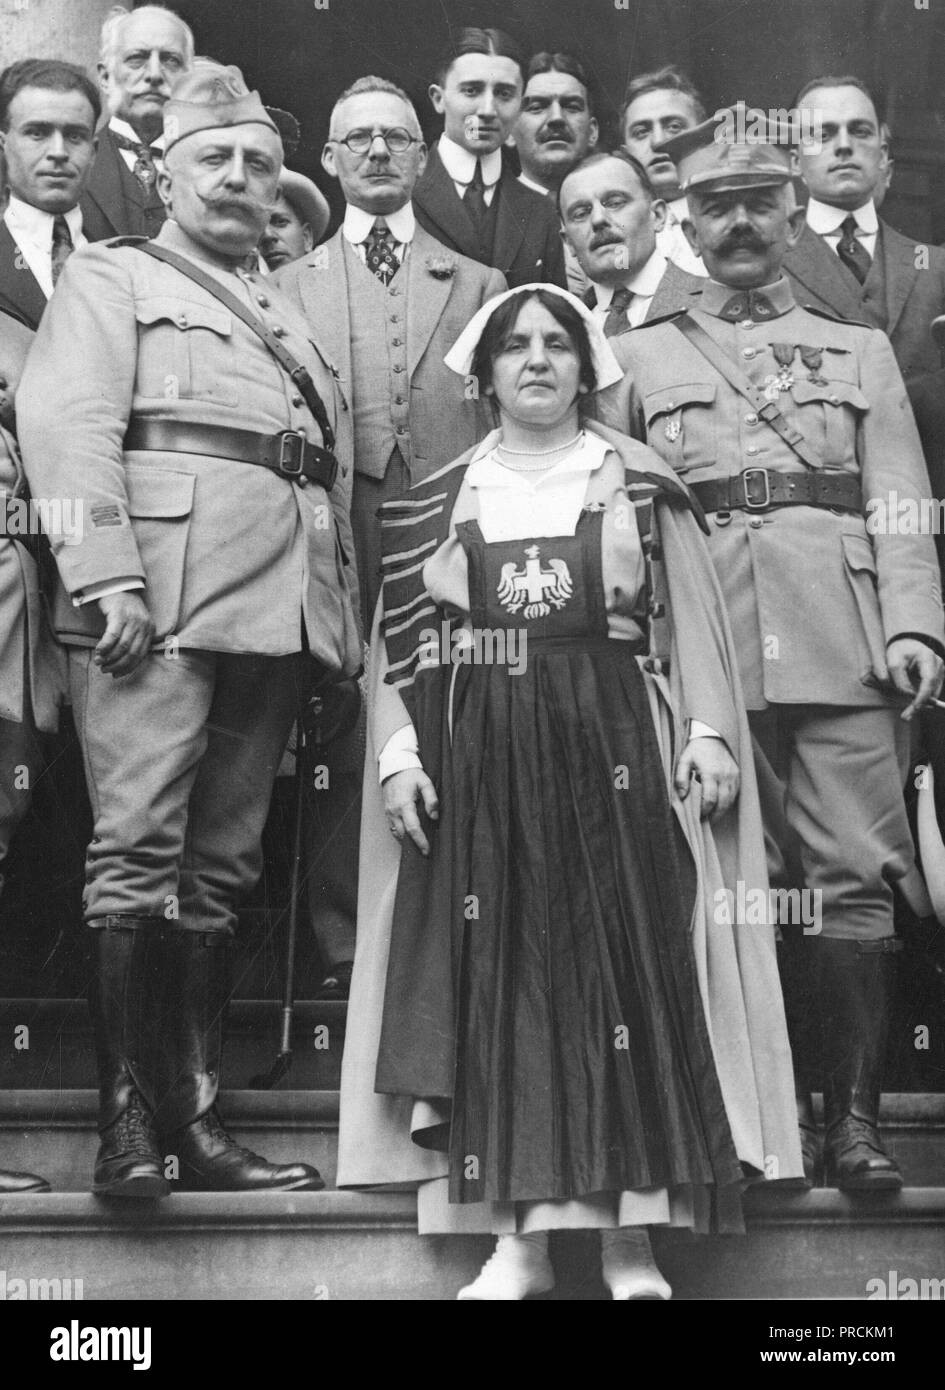 Tag der Unabhängigkeit, 1918 - Polen gewinnt Award für Juli vierter angezeigt. Polen war das erste Auszeichnung, eine Goldmedaille von der Stadt New York vorgelegt, der die beste Vertretung im Viertel der Juli Parade in der Stadt gemacht. Stockfoto